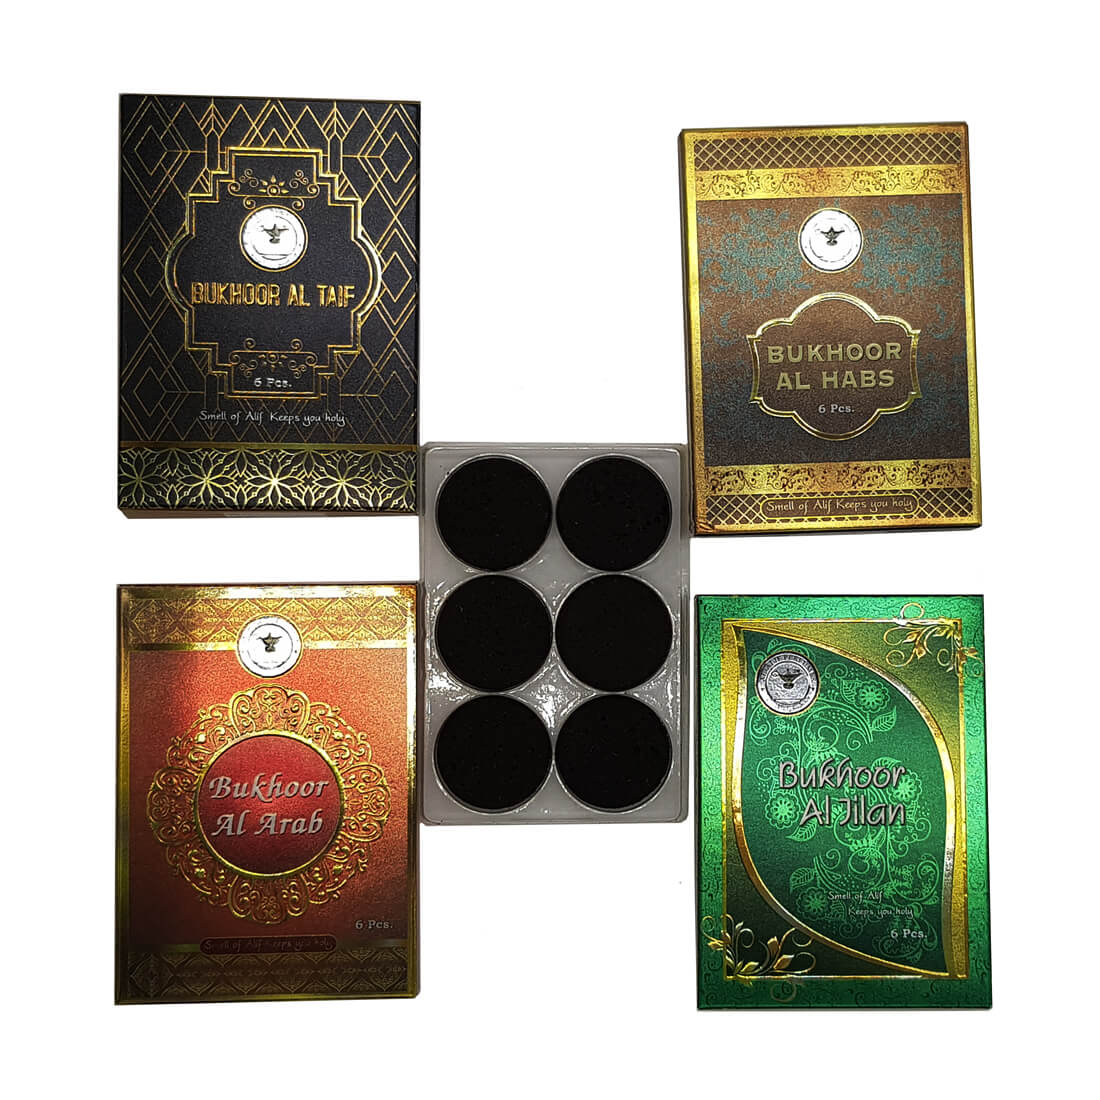 Al Alif Bukhoor Al Sanjar, Royal King, Al Waris, Al Noora, Al Arab, Al Taif, Al Habs & Al Jilam Bakhoor Coin 6 pcs Home Fragrance Pack of 8